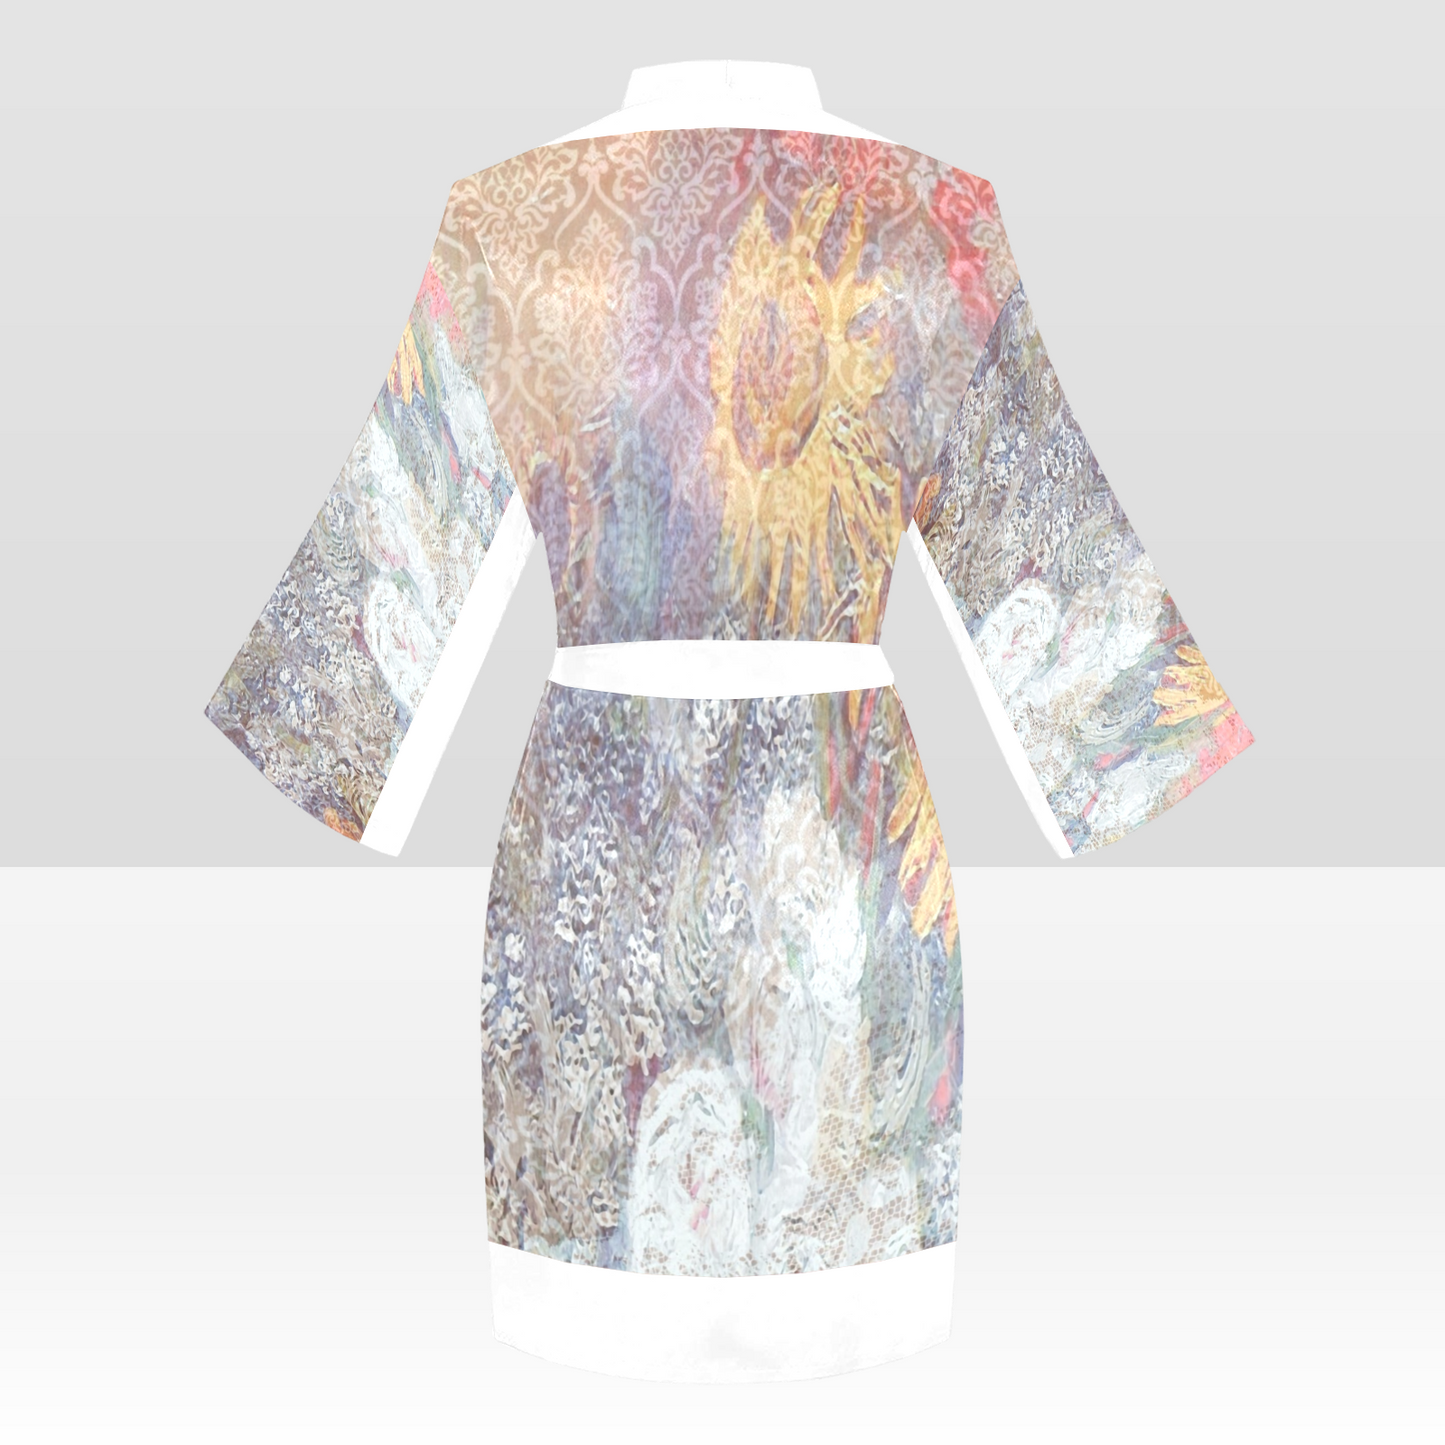 Vintage Floral Kimono Robe, Black or White Trim, Sizes XS to 2XL, Design 54x